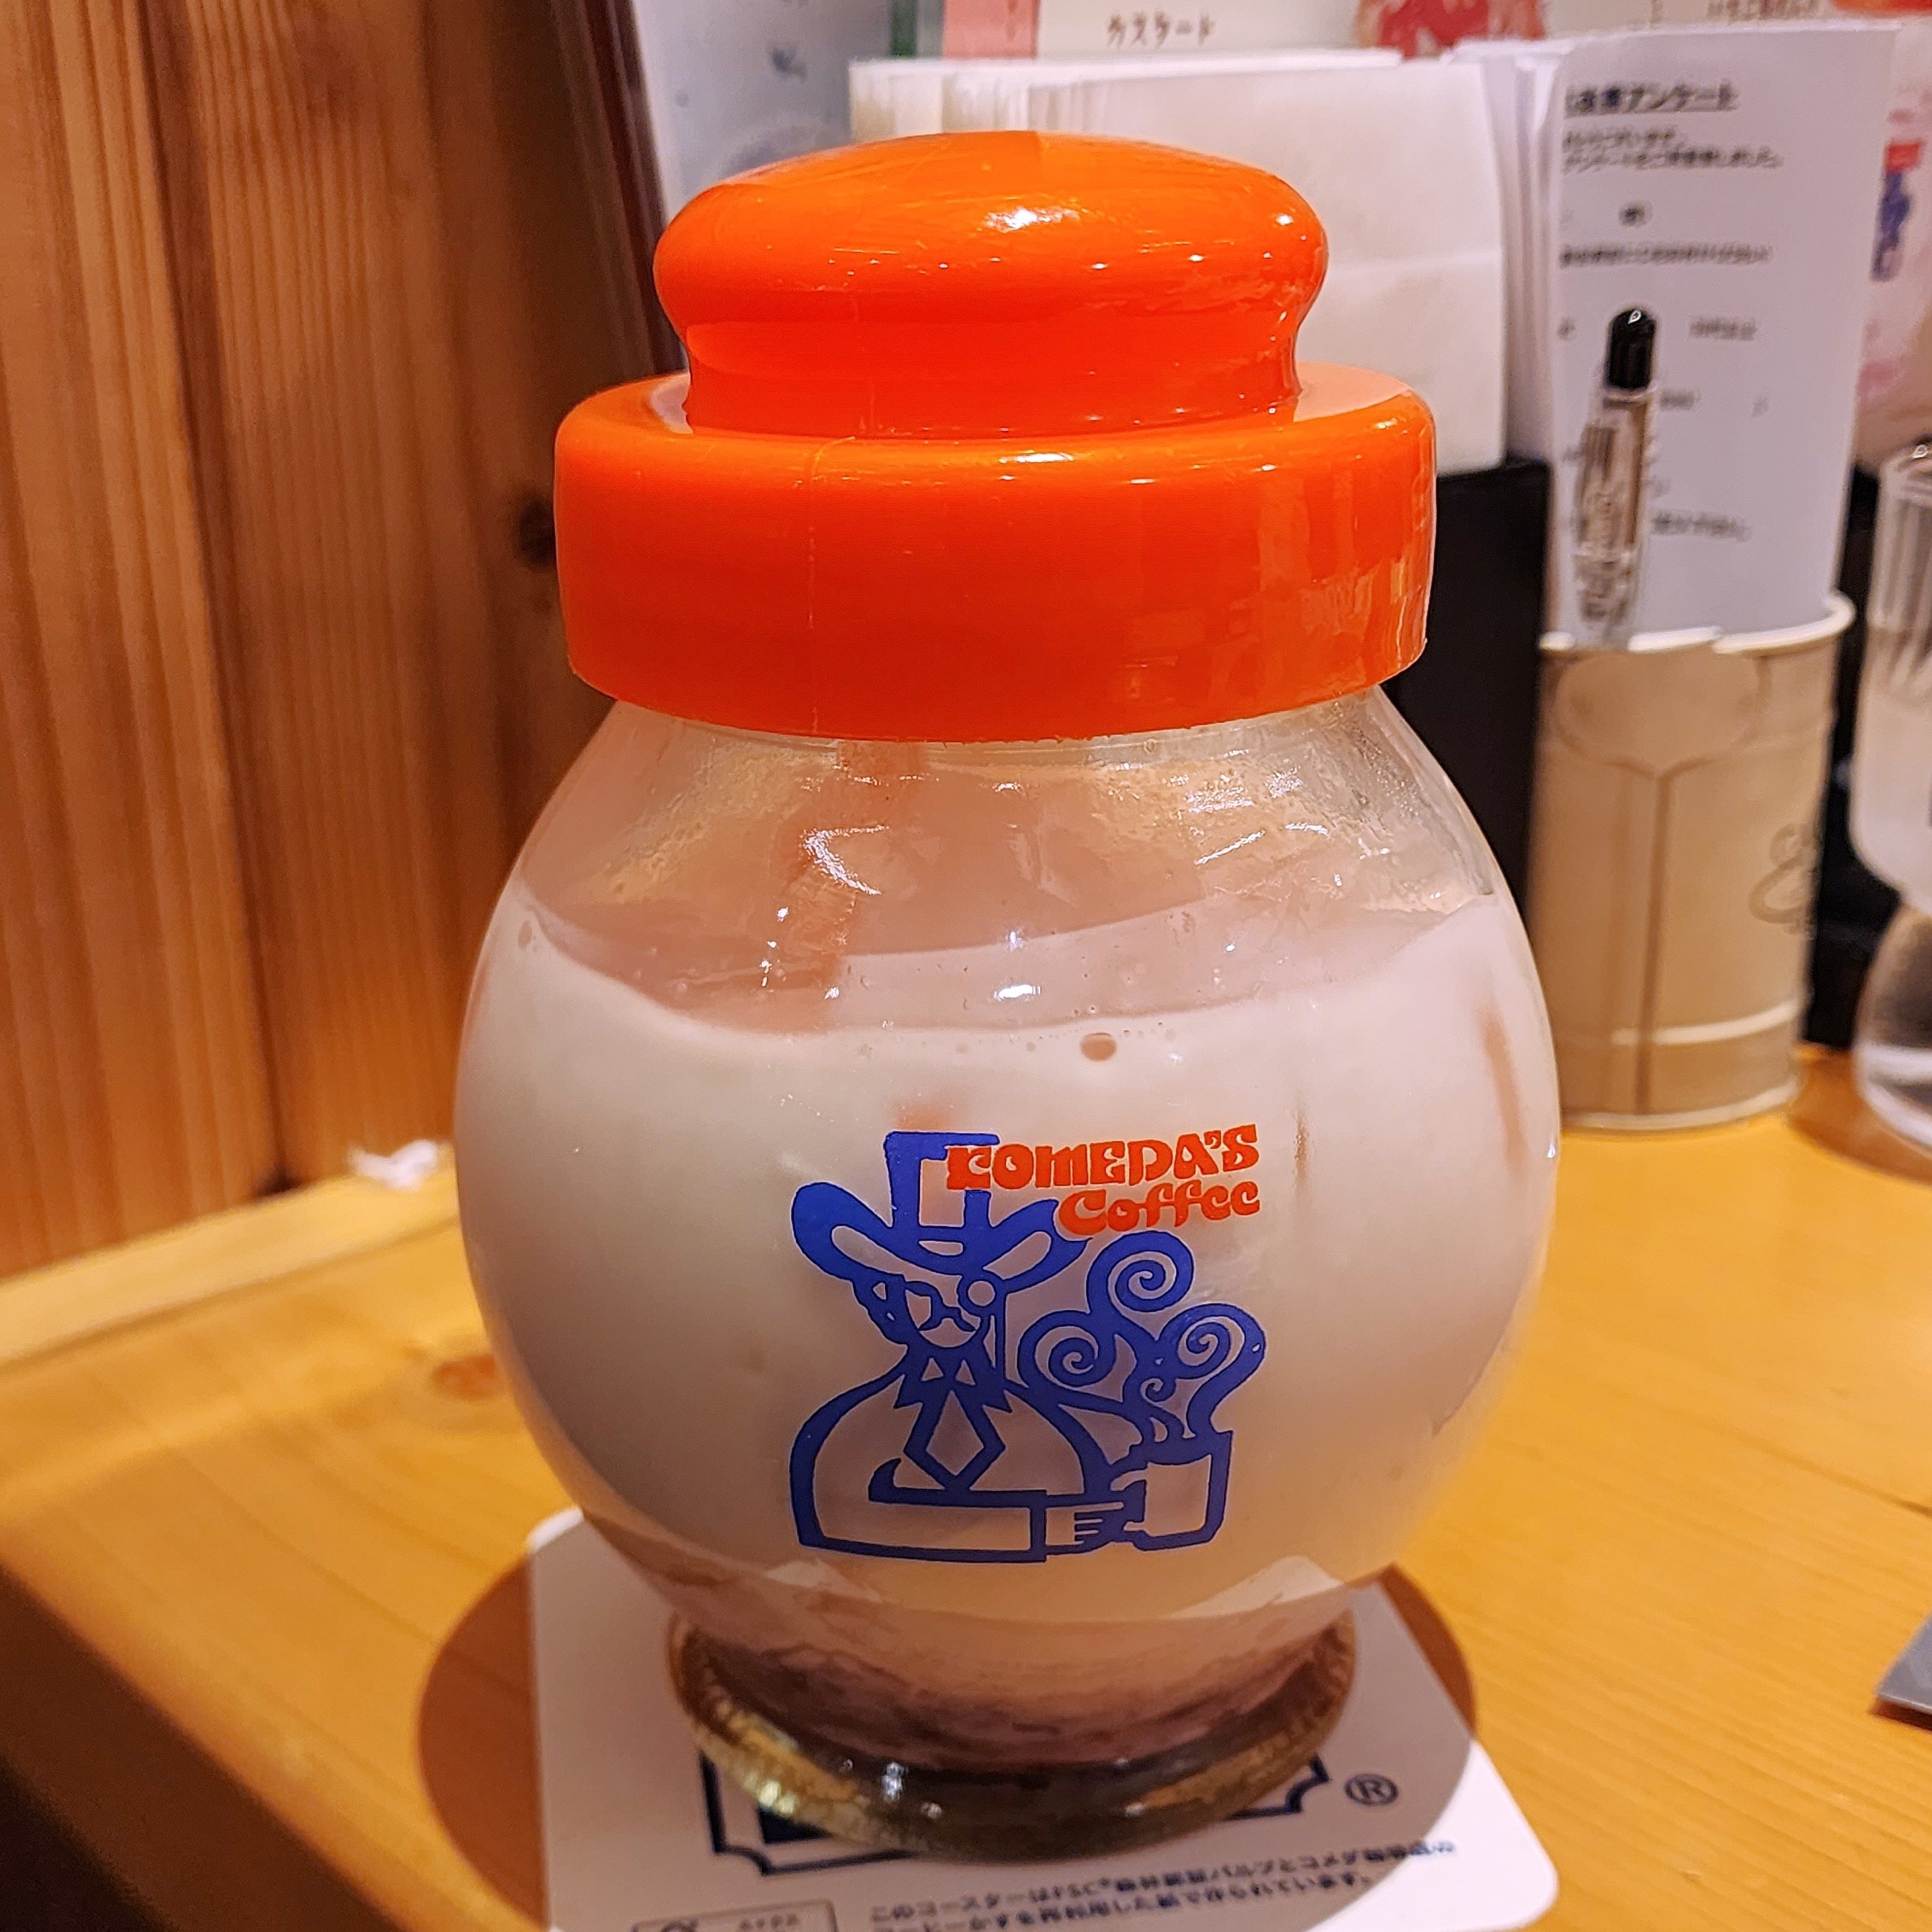 コメダ珈琲店のおすすめドリンク「つぶつぶいちごミルク」